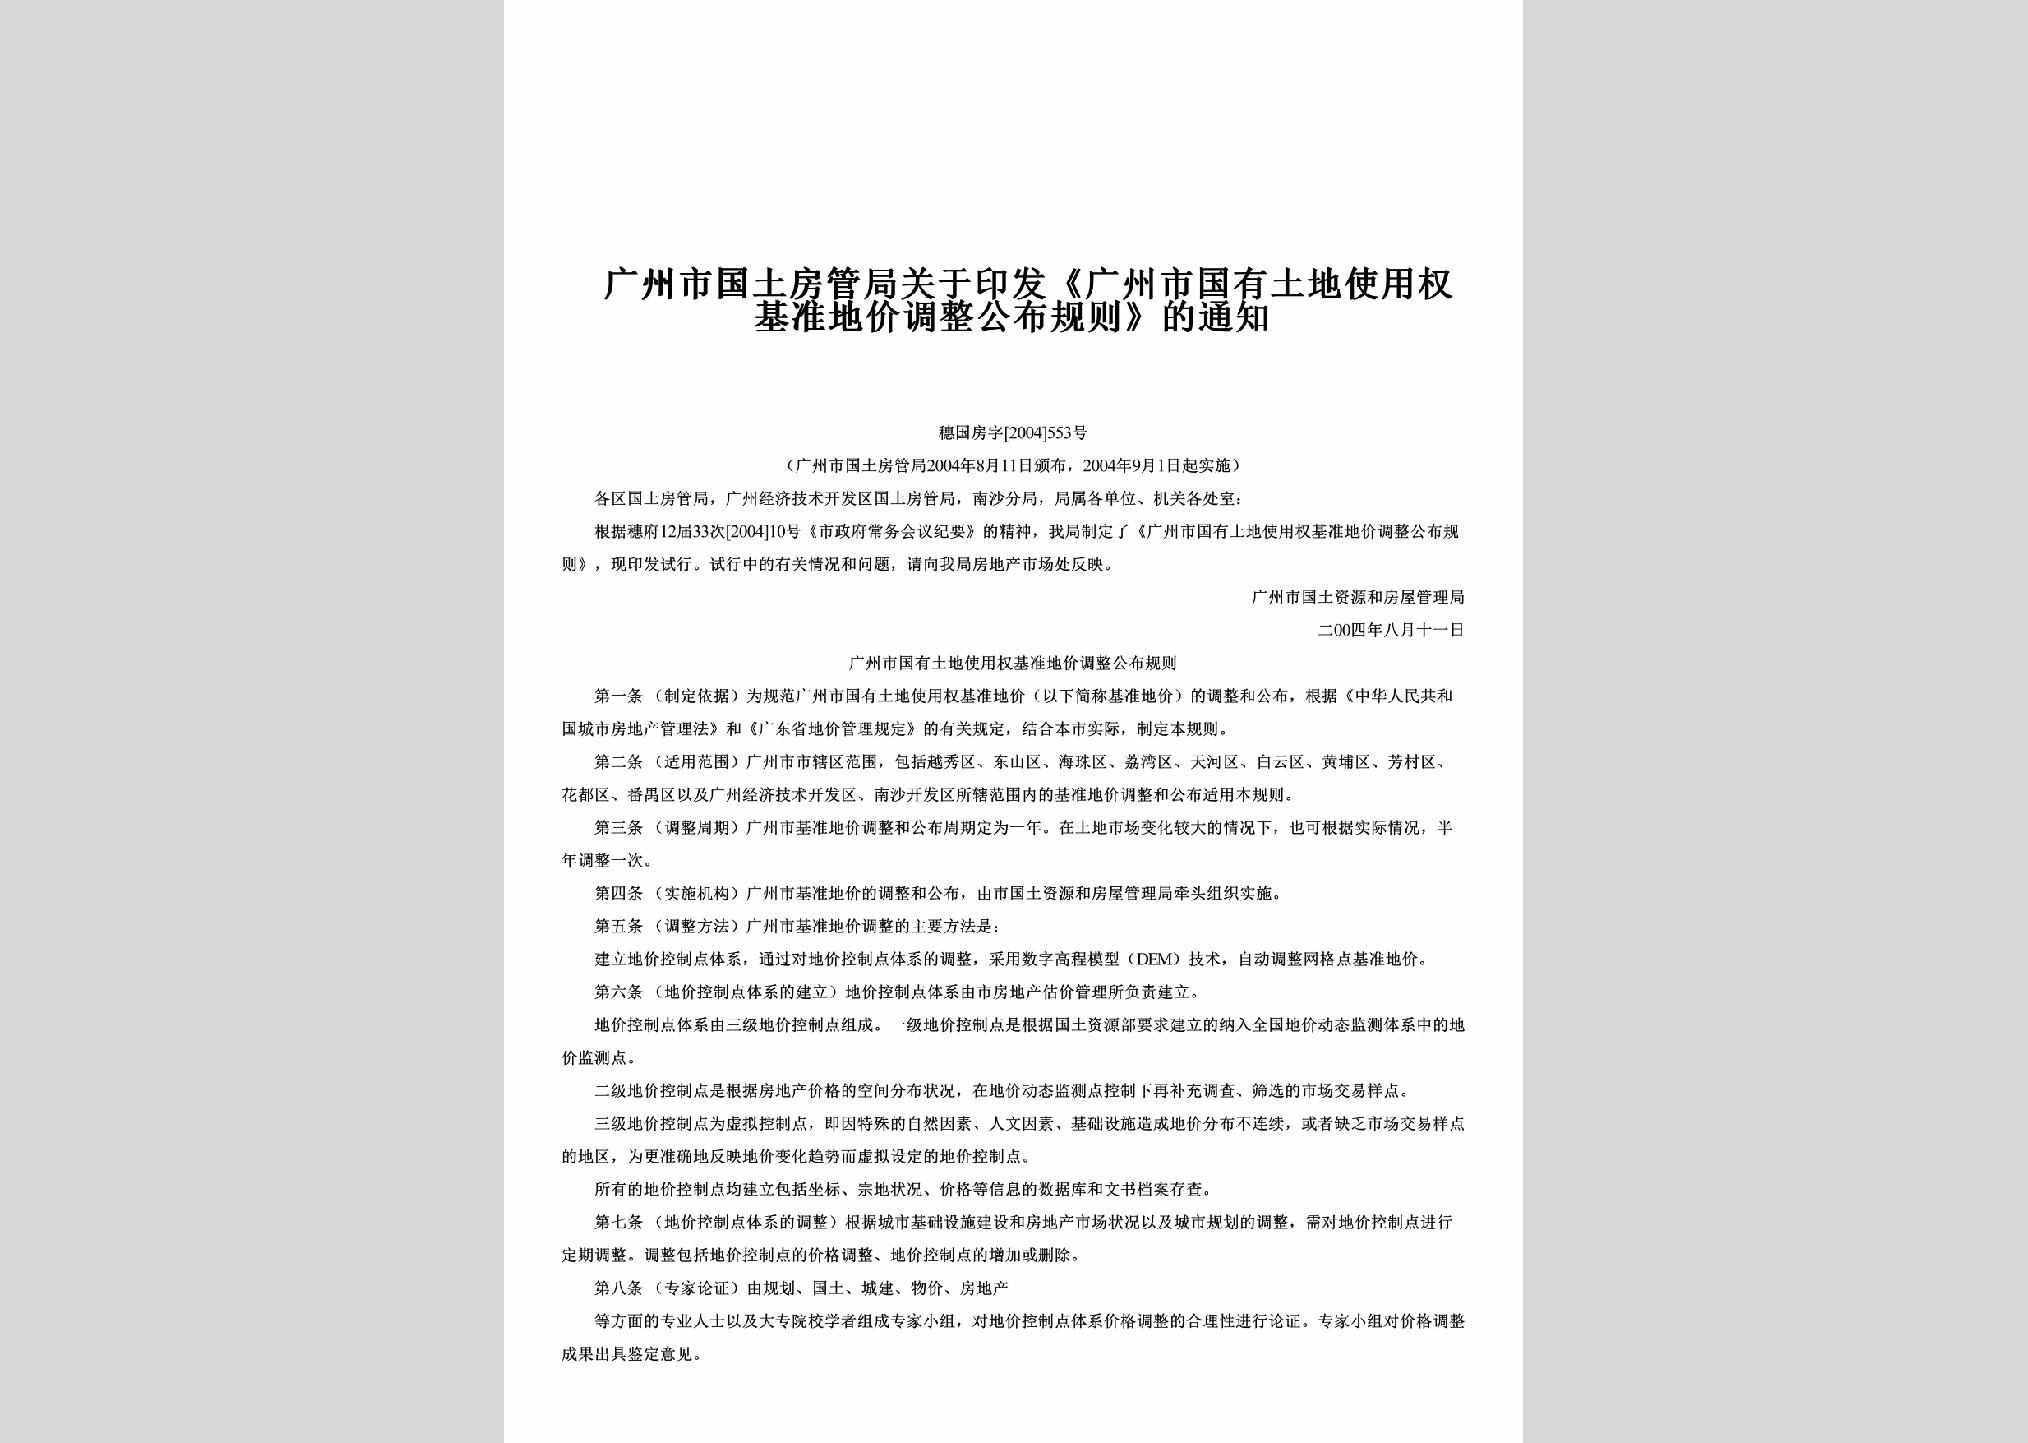 穗国房字[2004]553号：关于印发《广州市国有土地使用权基准地价调整公布规则》的通知